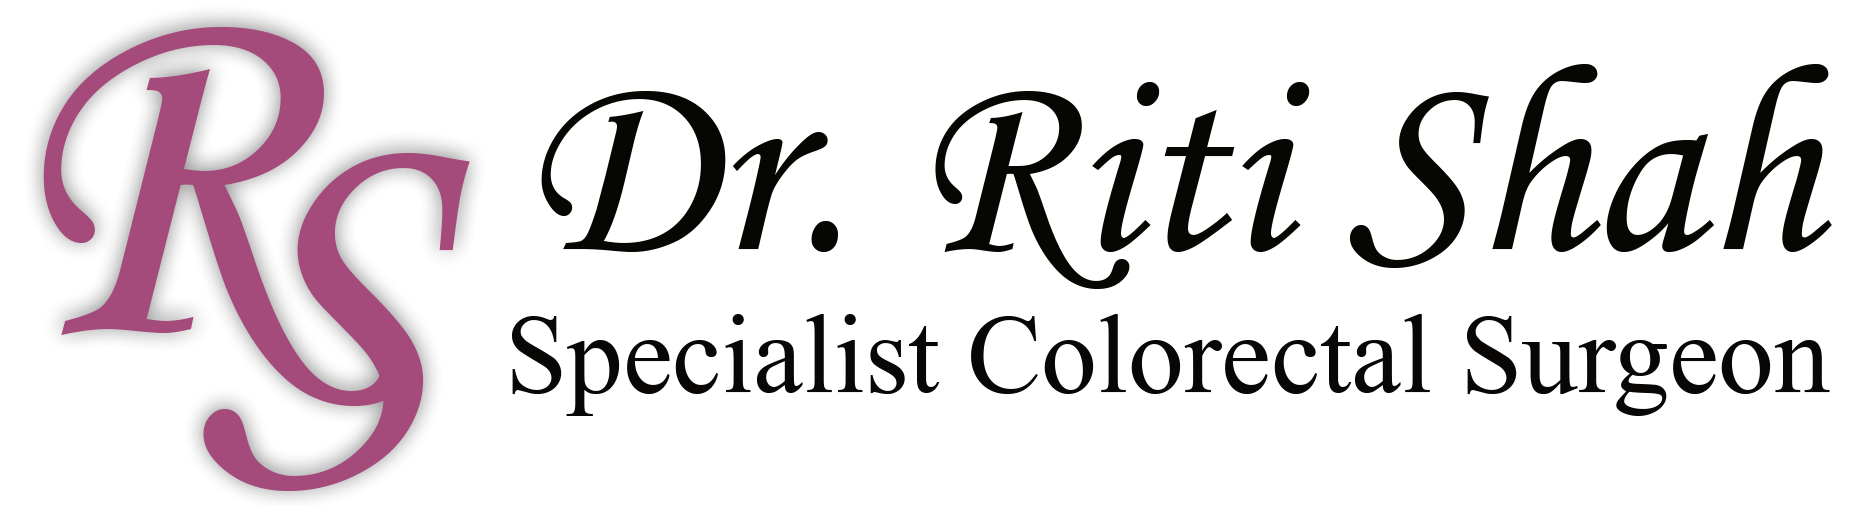 Dr. Riti Shah